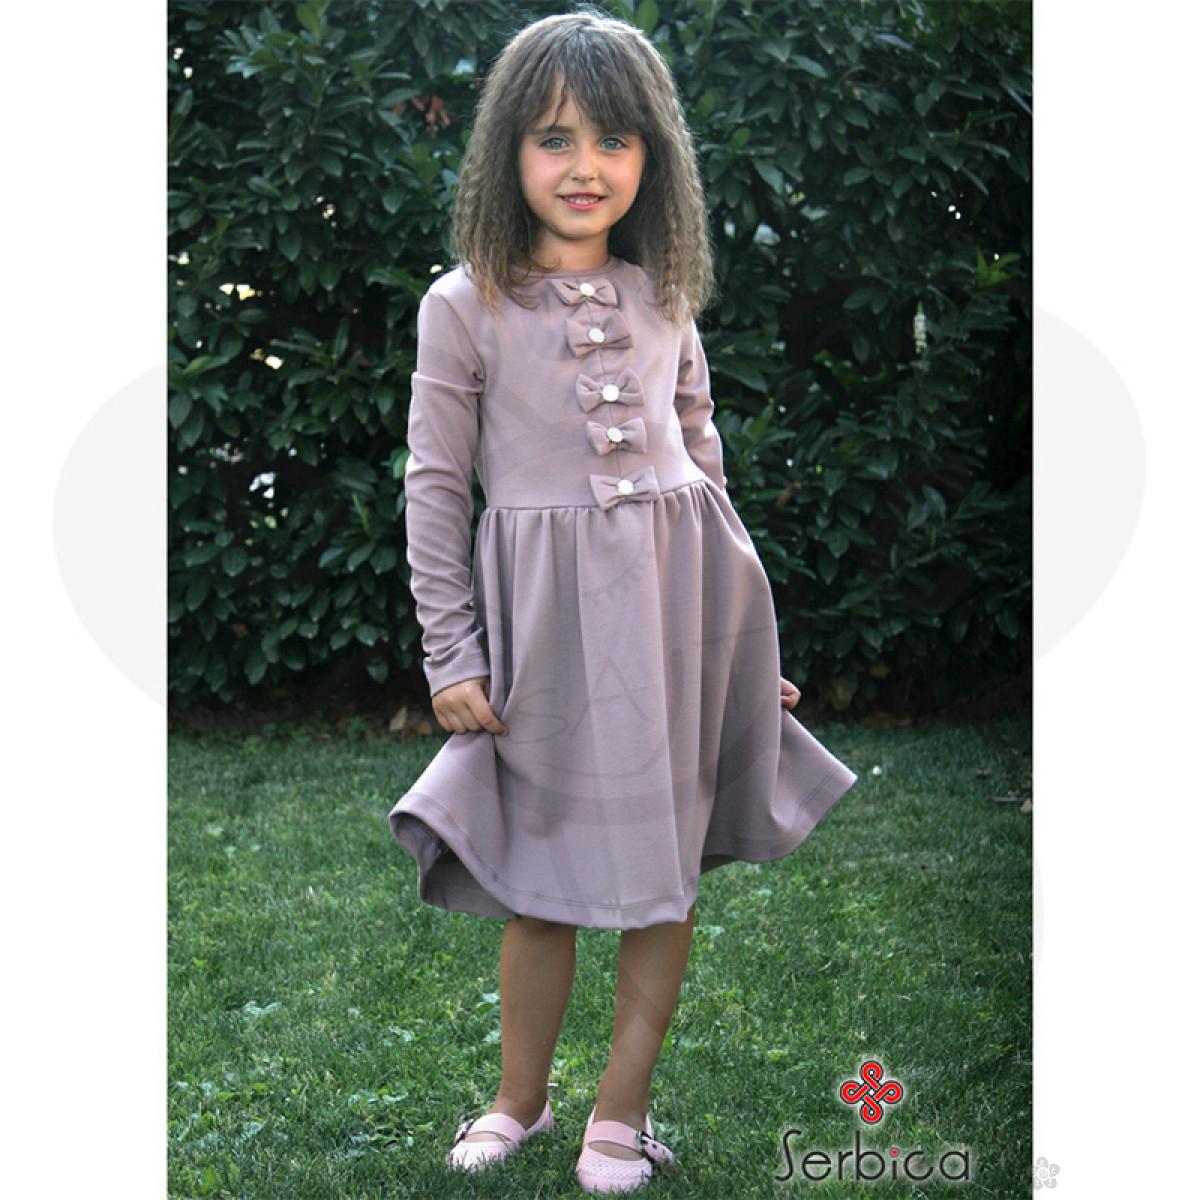 Dečija odeća online - Haljina za devojčice | Dečji sajt